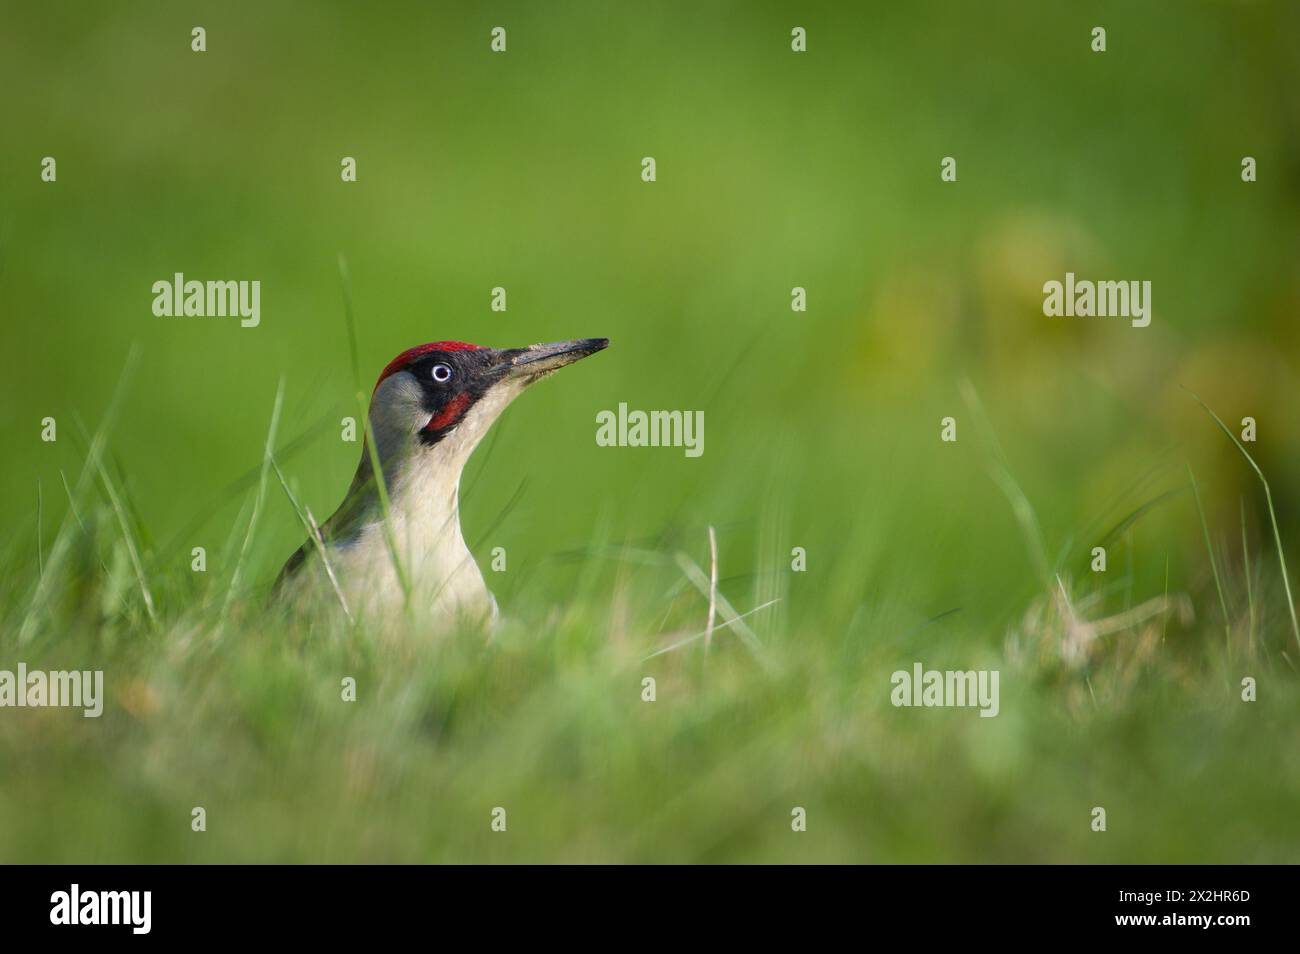 L'uccello ceco Picus viridis, noto anche come picchio verde europeo, è alla ricerca di cibo nell'erba. Becco sporco. Isolato su sfondo sfocato. Foto Stock